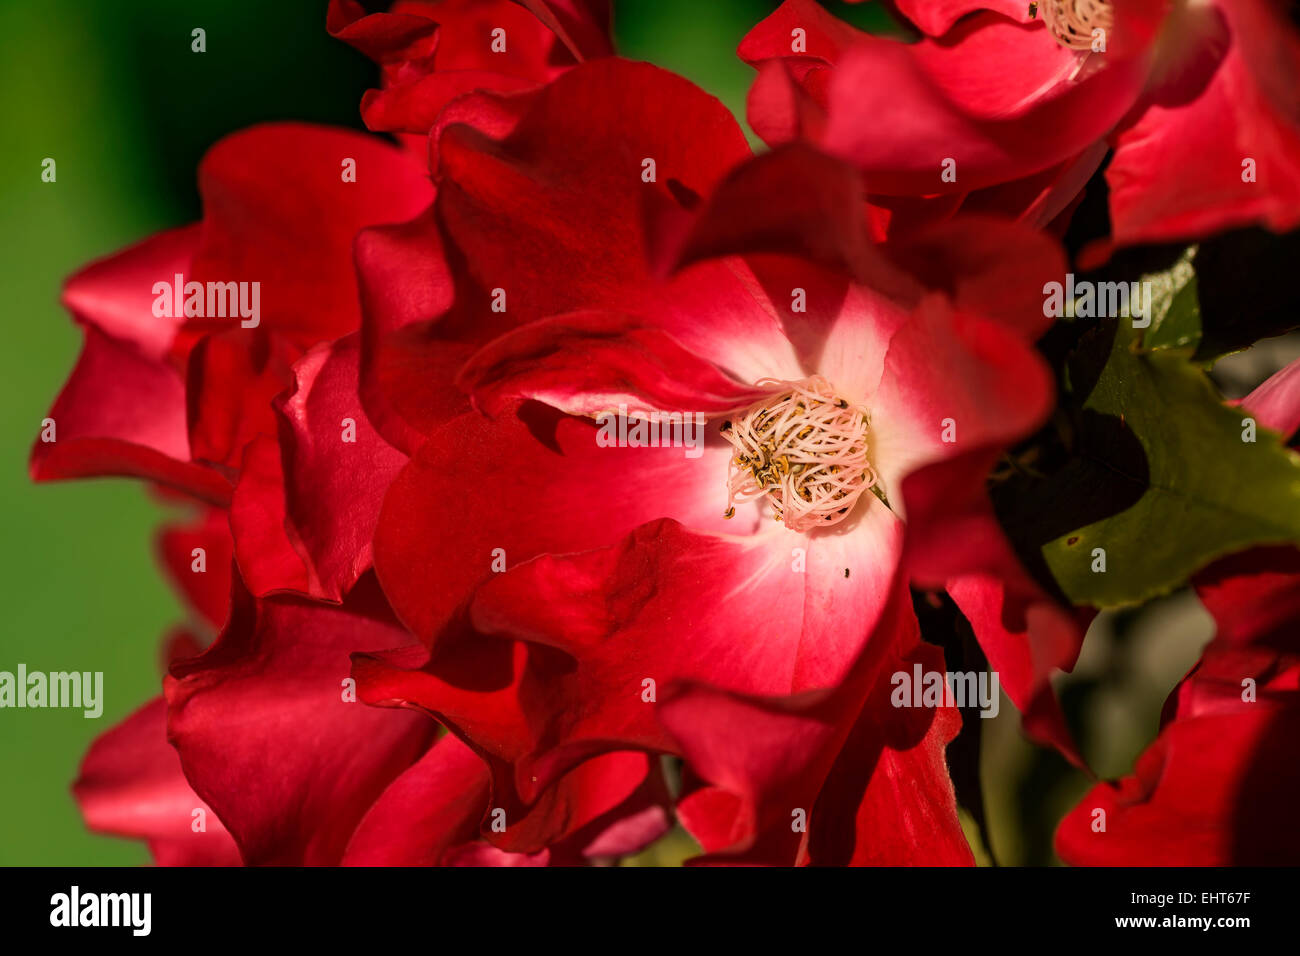 Crimson red single flowering garden rose. Stock Photo